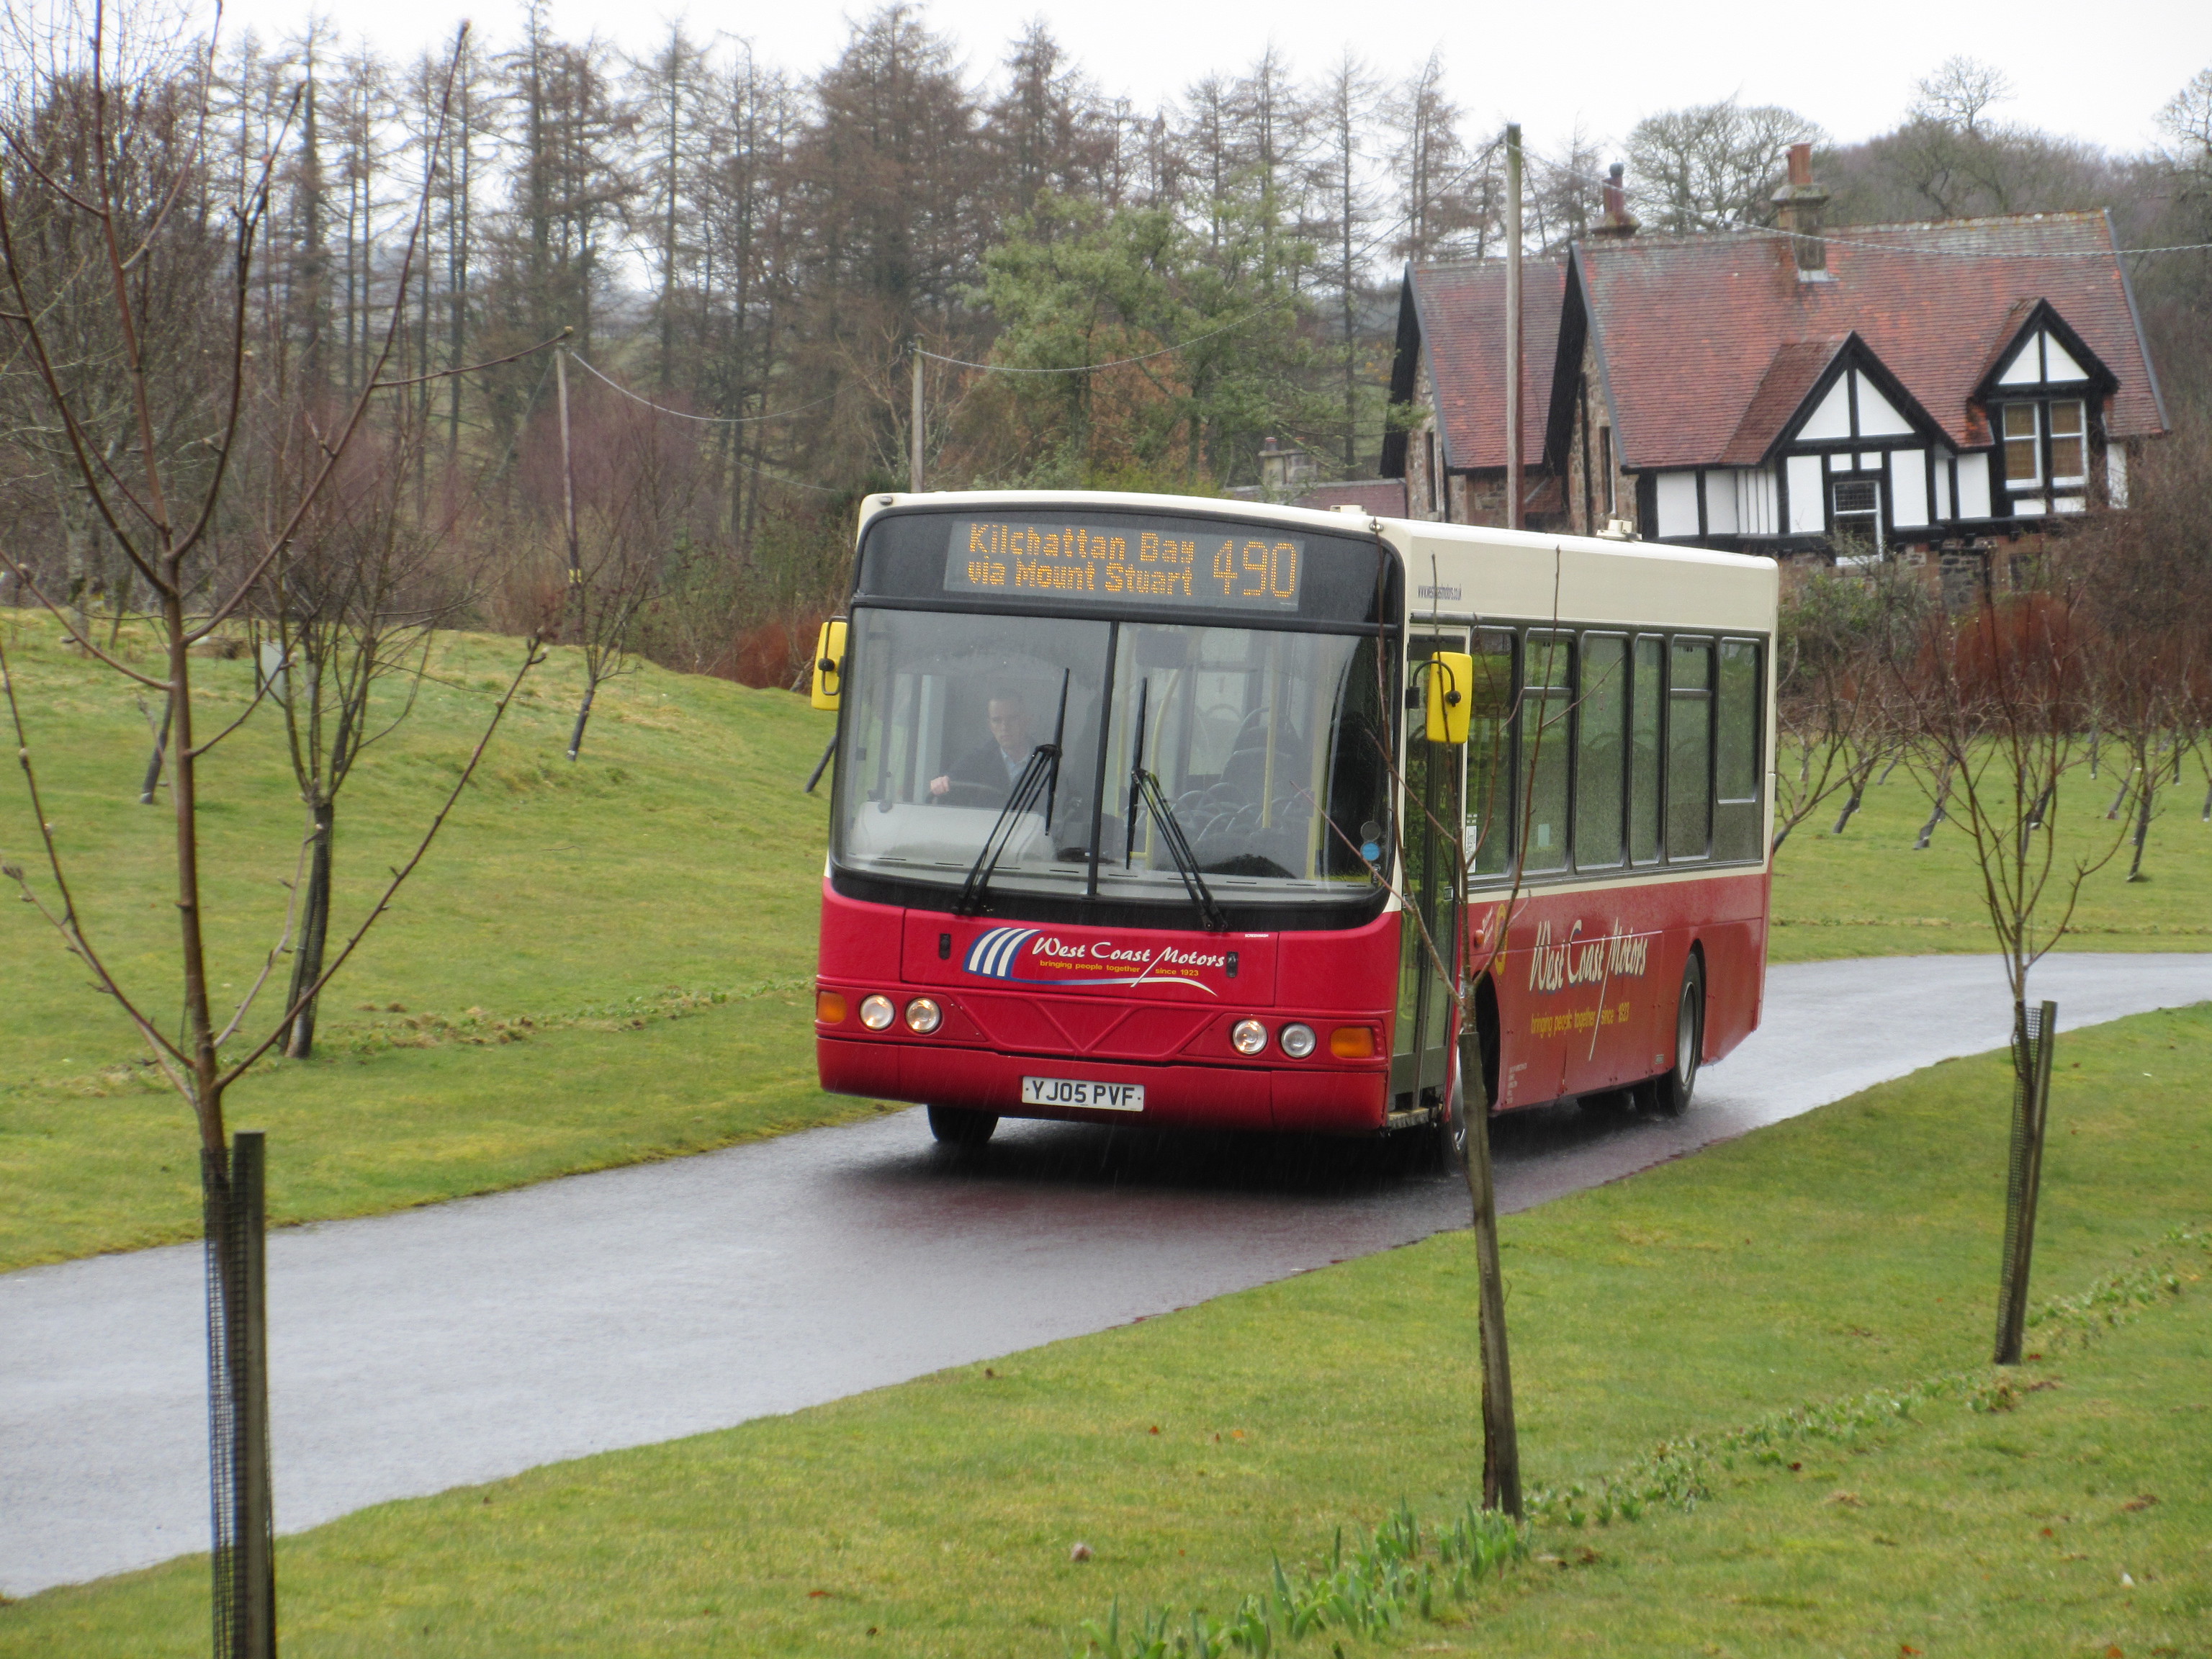 West Coast Motors bus approaching Mount Stuart, Bute, Scotland, 4 April 2018